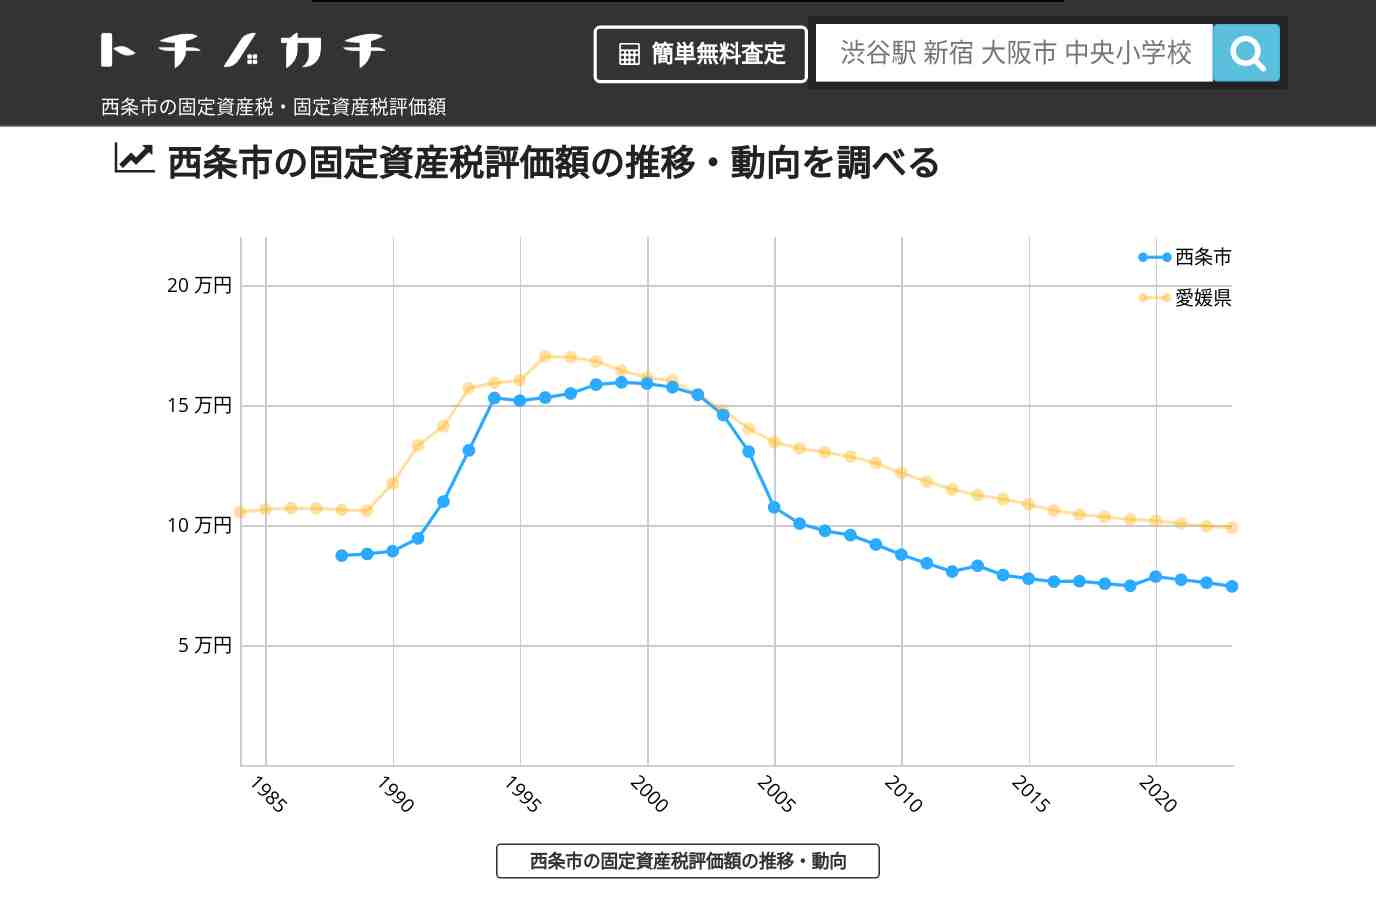 楠河小学校(愛媛県 西条市)周辺の固定資産税・固定資産税評価額 | トチノカチ